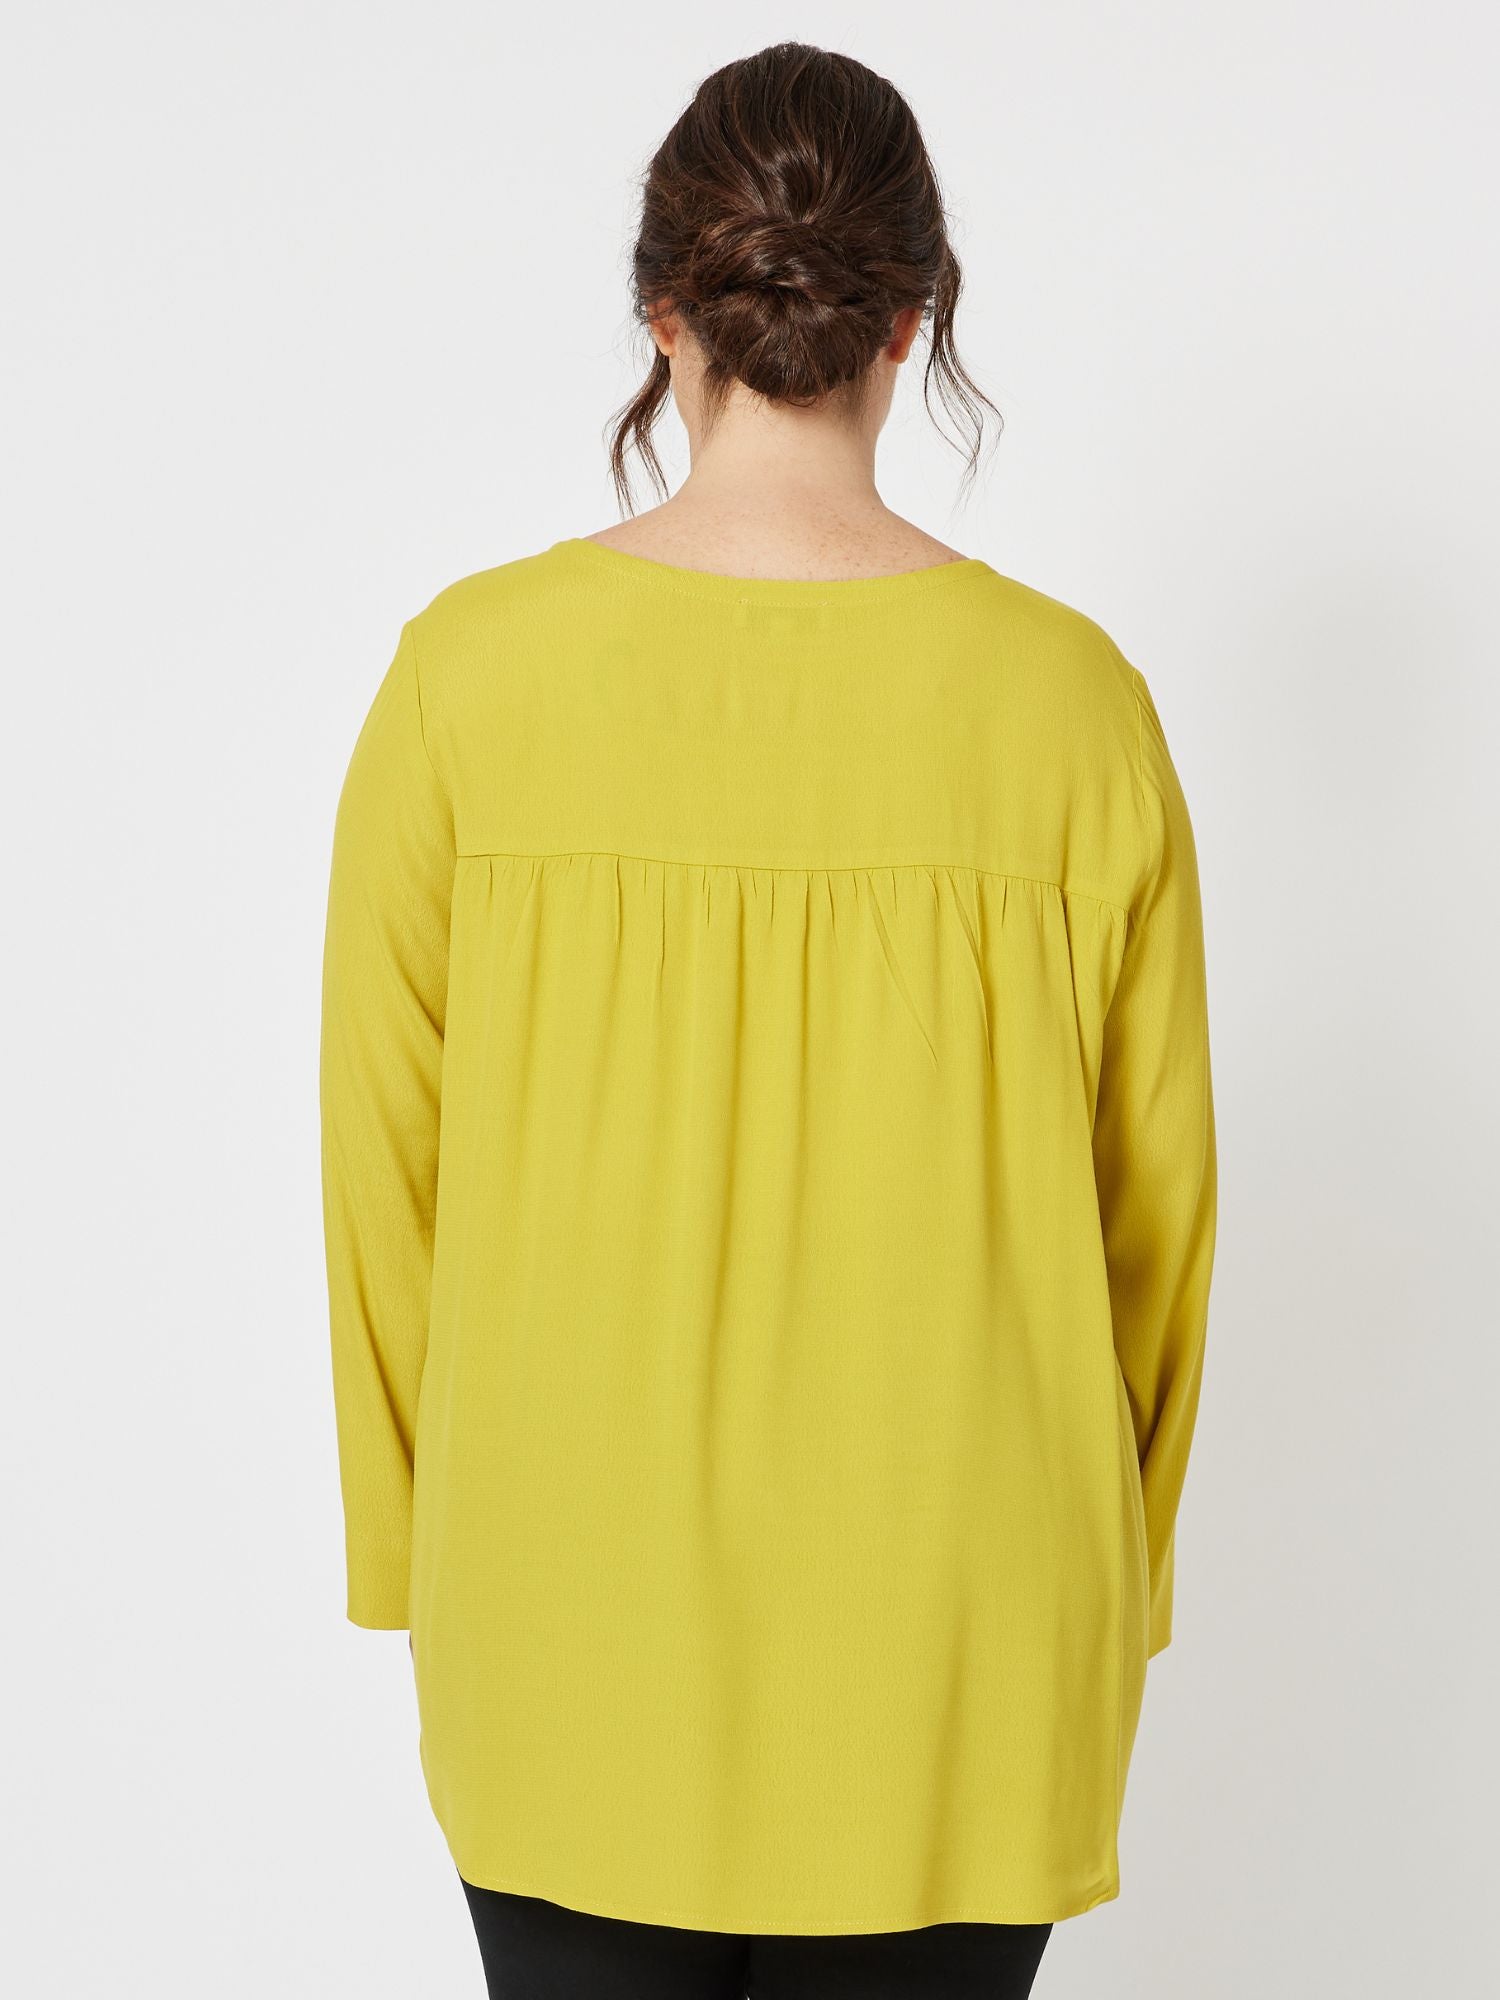 Kerryn Long Sleeve Top - Chartreuse